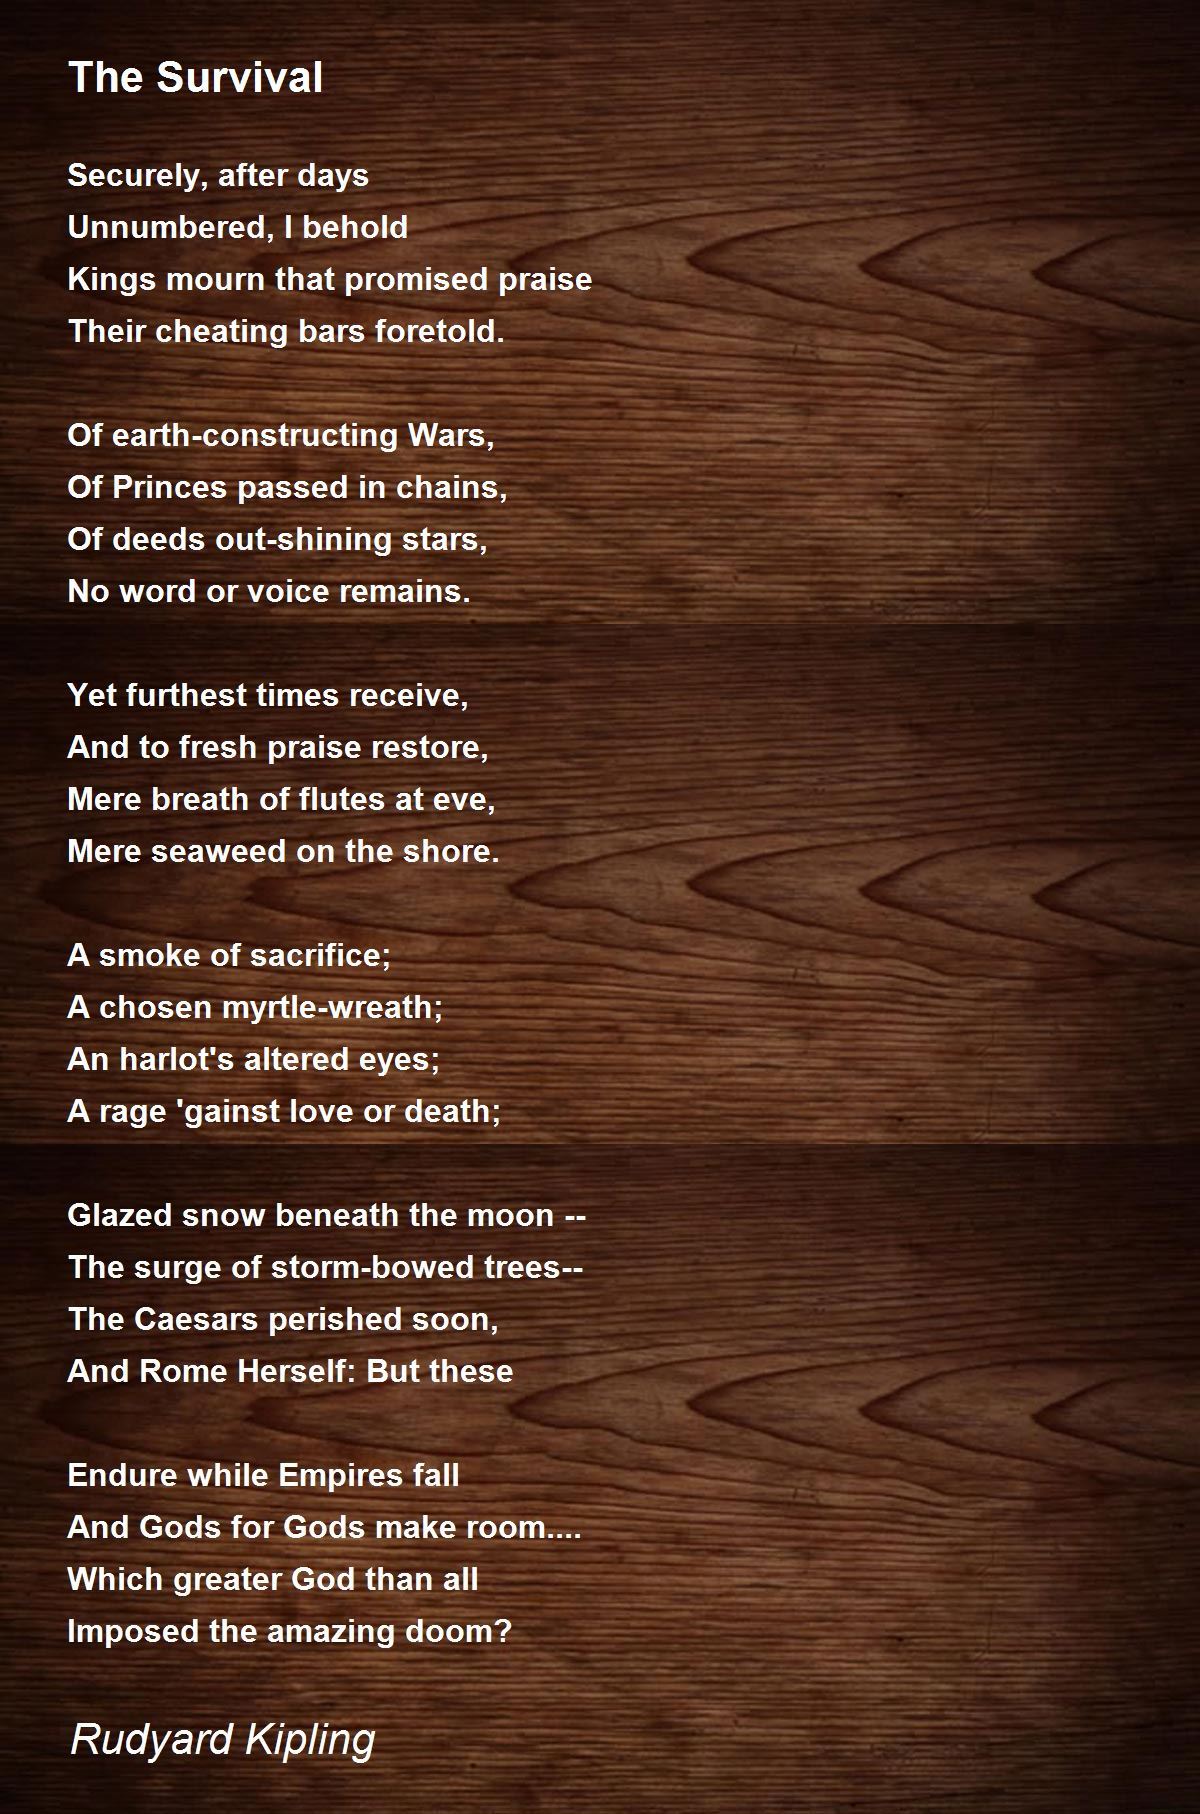 rudyard kipling fuzzy wuzzy poem